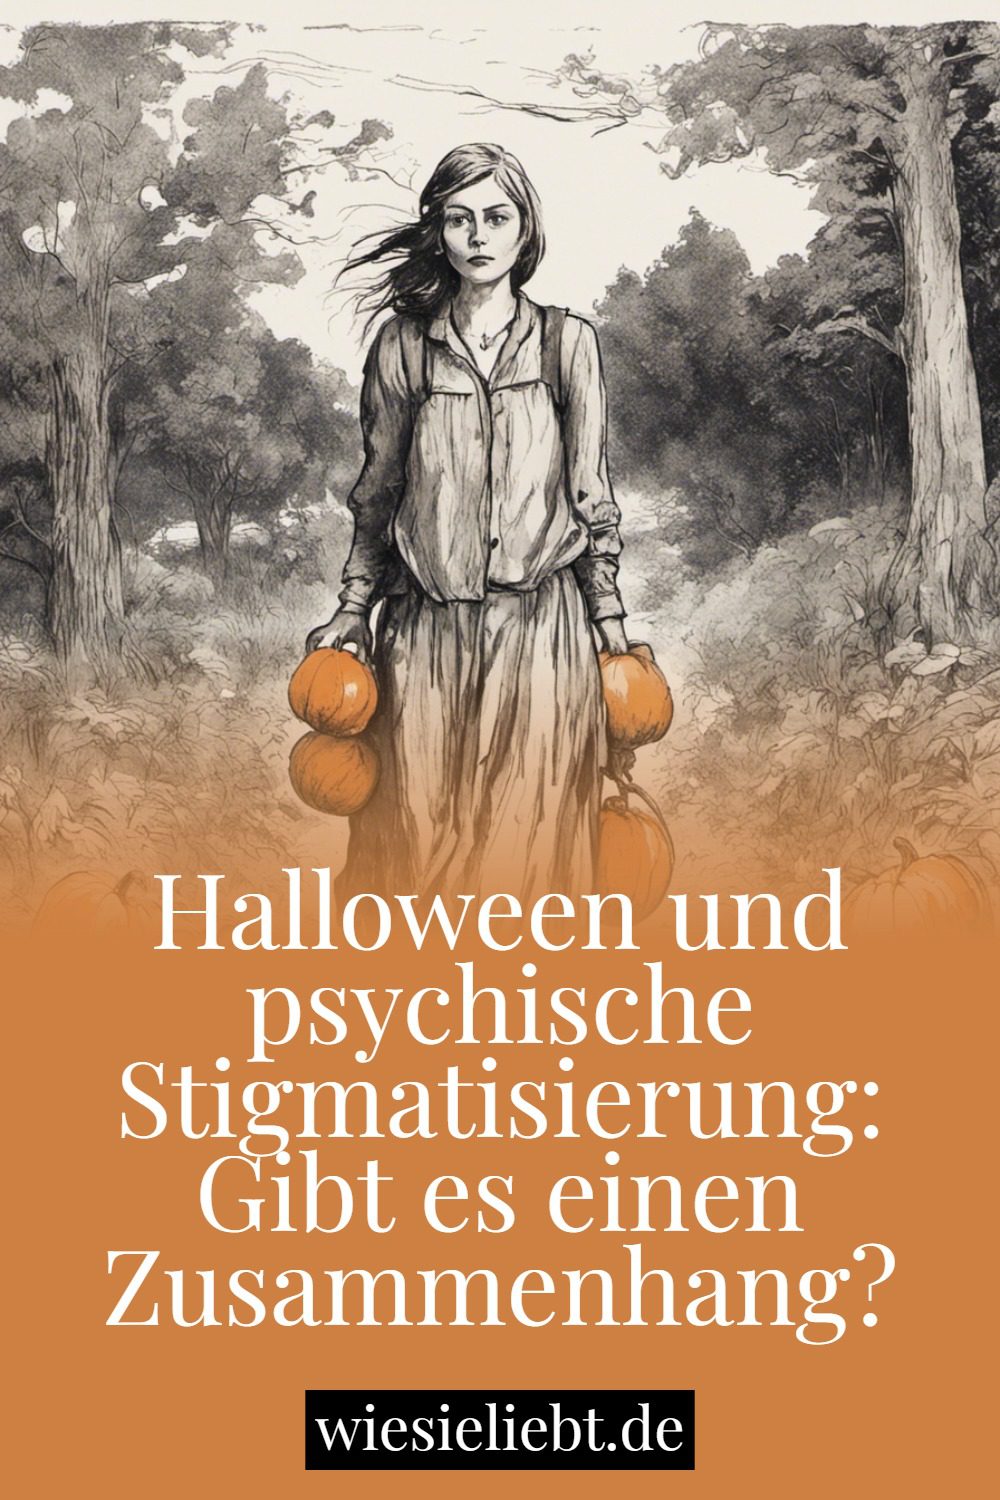 Gibt es einen Zusammenhang zwischen Halloween und der Stigmatisierung der psychischen Gesundheit?